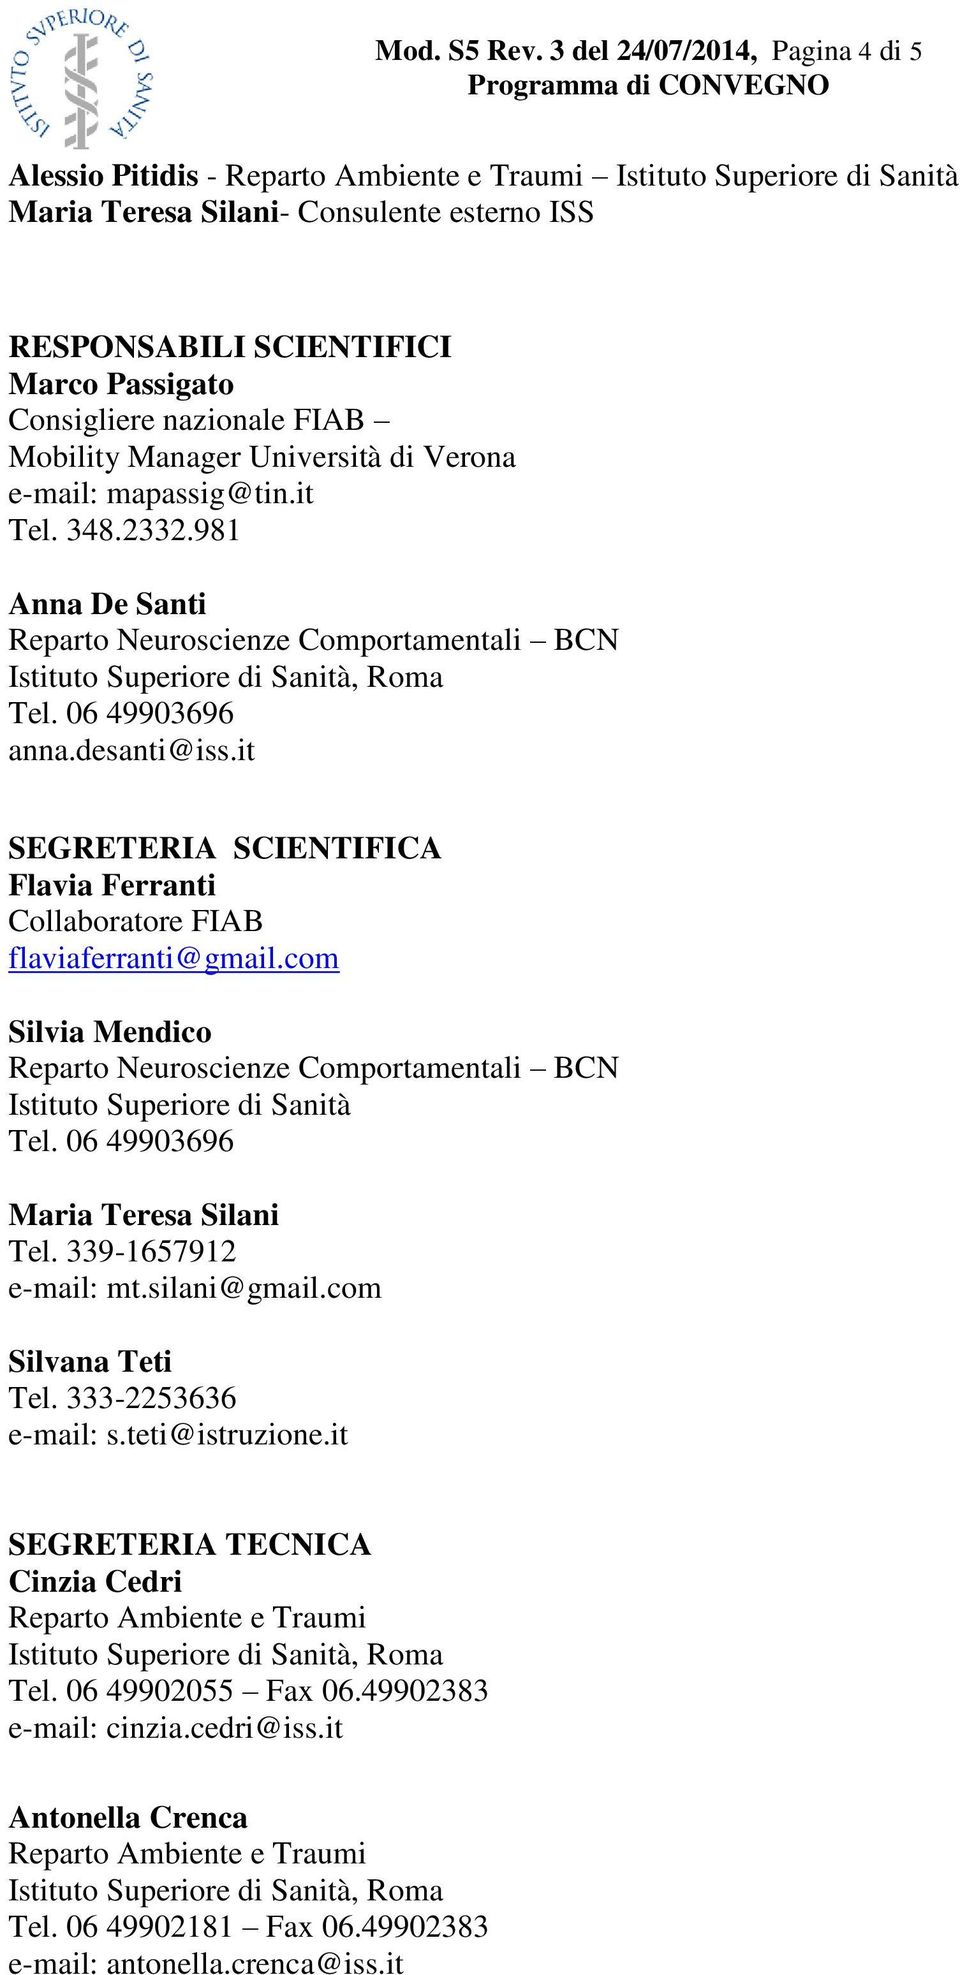 FIAB Mobility Manager Università di Verona e-mail: mapassig@tin.it Tel. 348.2332.981 Reparto Neuroscienze Comportamentali BCN Tel. 06 49903696 anna.desanti@iss.